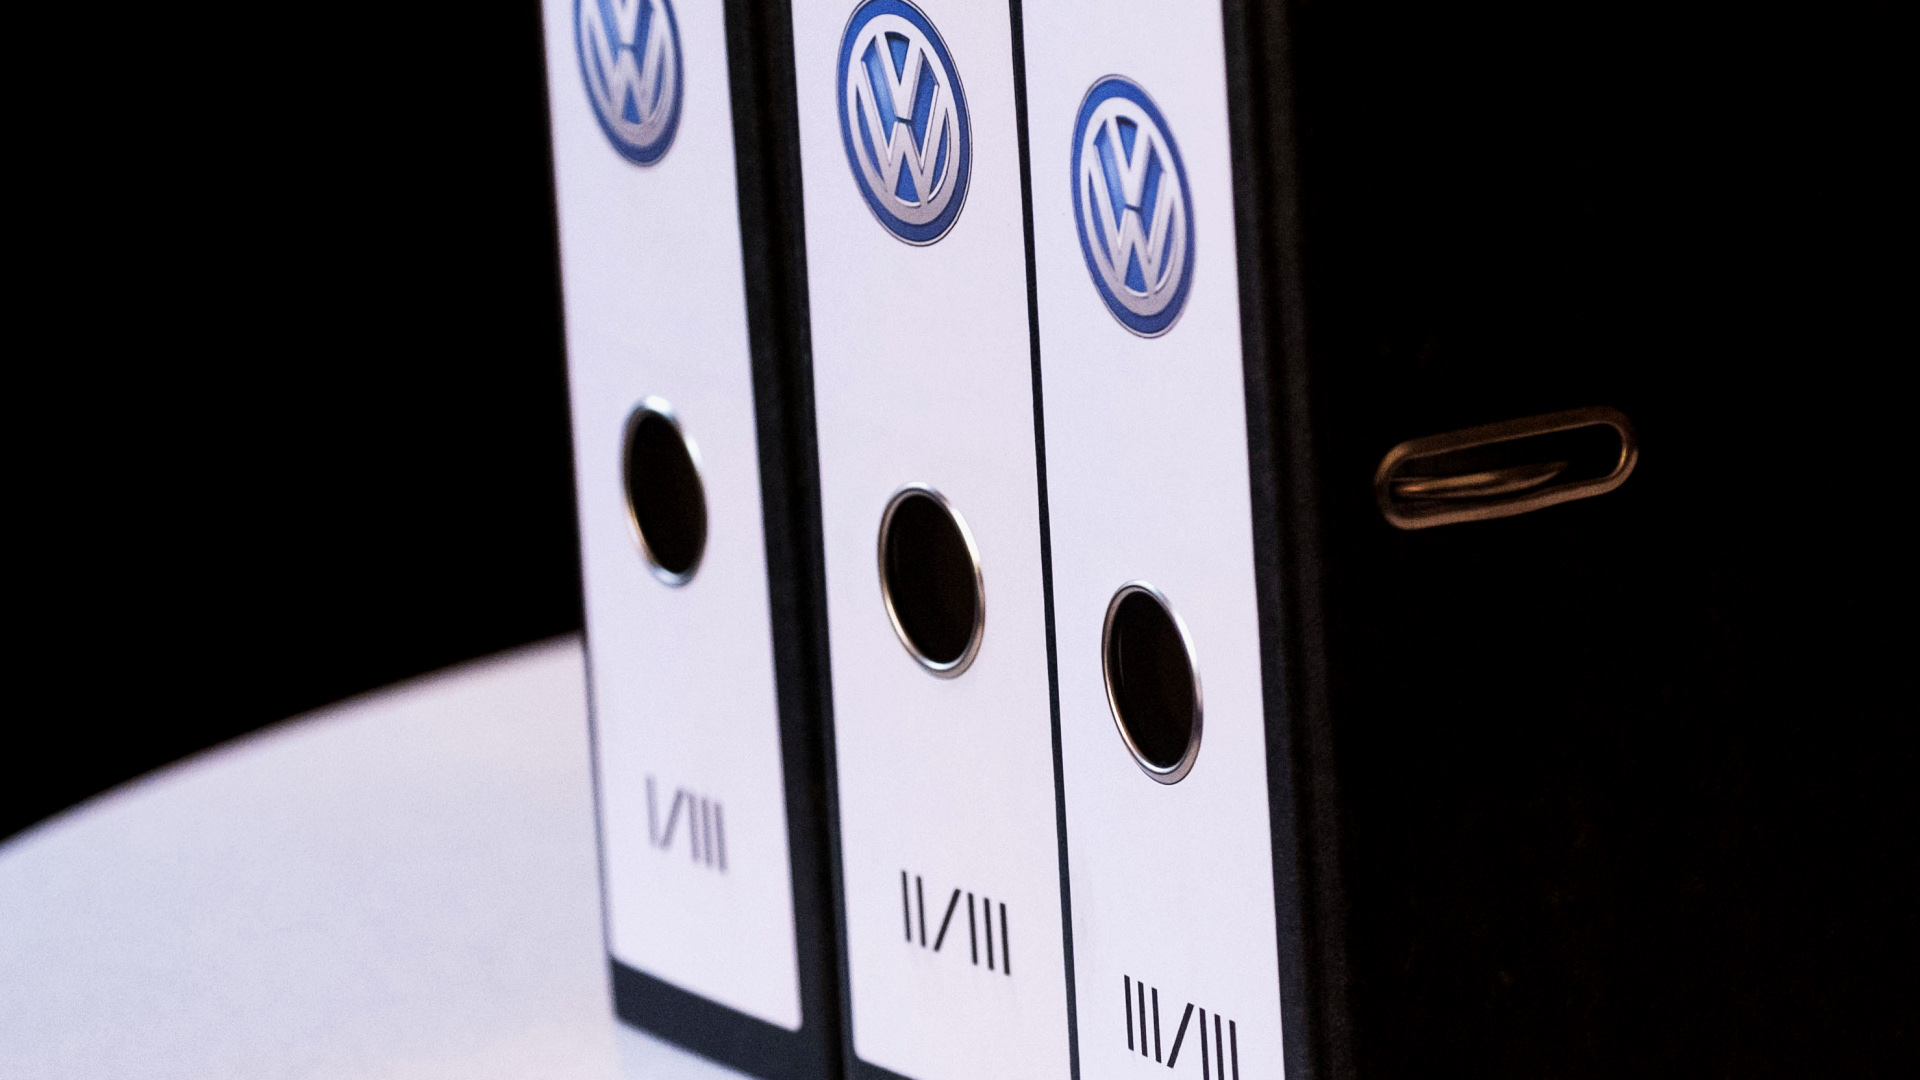 Akten zu einer Klage gegen den VW-Konzern während einer Pressekonferenz auf einem Tisch | dpa